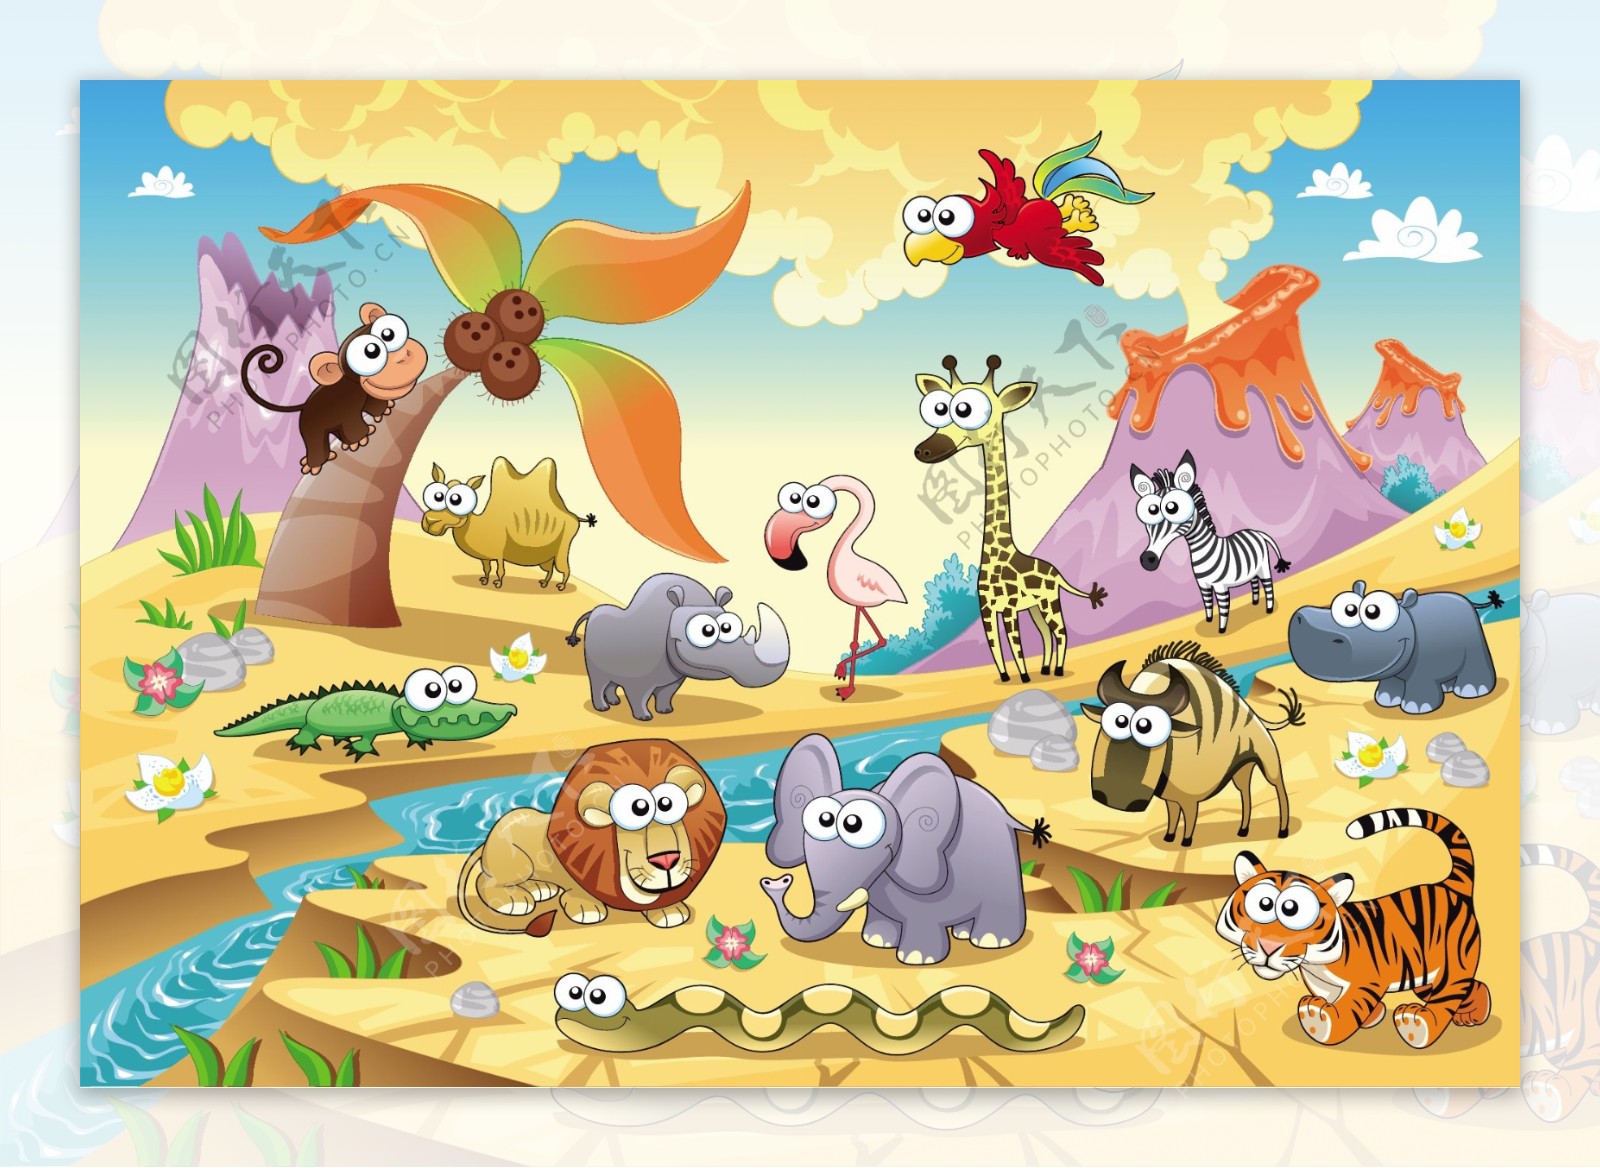 溪流两边五颜六色的动物卡通画